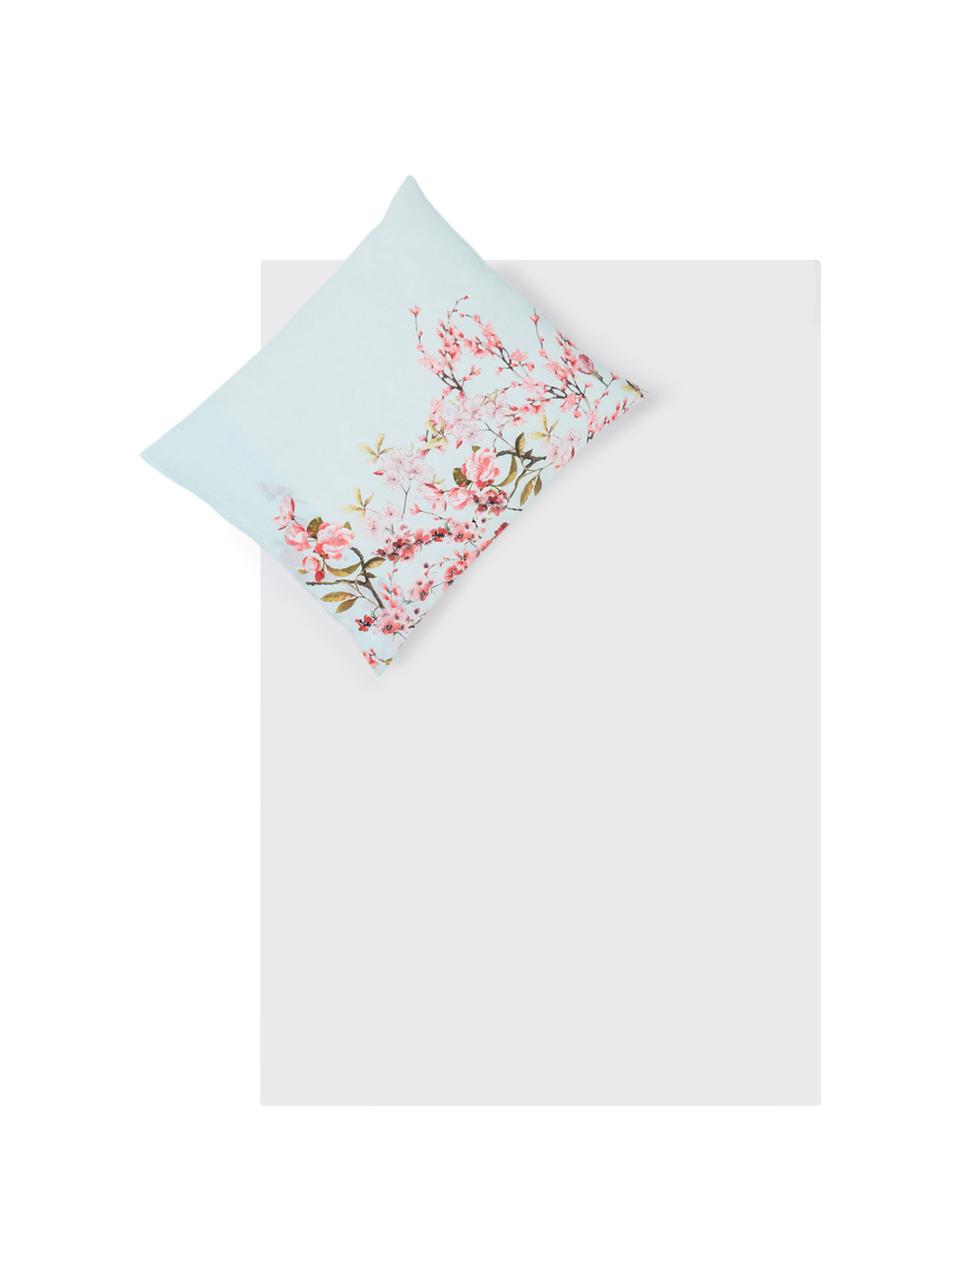 Dubbelzijdig dekbedovertrek Chinoiserie, Katoen, Bovenzijde: licht mintgroen, roze, groen. Onderzijde: wit, 140 x 200 cm + 1 kussenhoes 60 x 70 cm